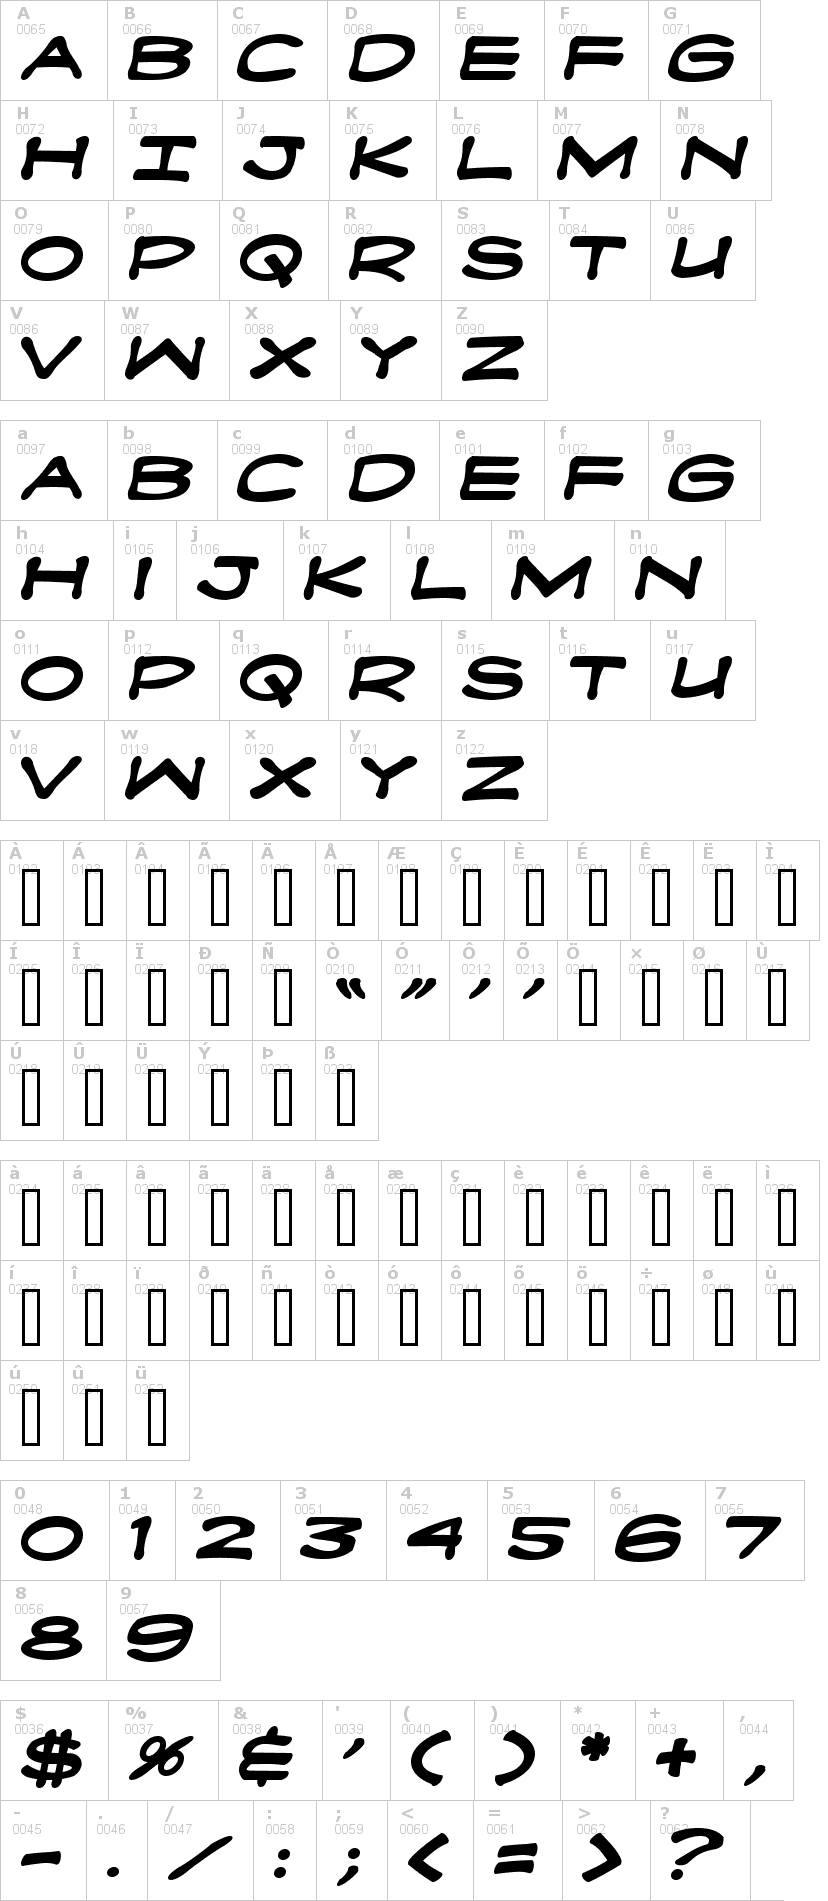 Lettere dell'alfabeto del font fanboy-hardcore con le quali è possibile realizzare adesivi prespaziati